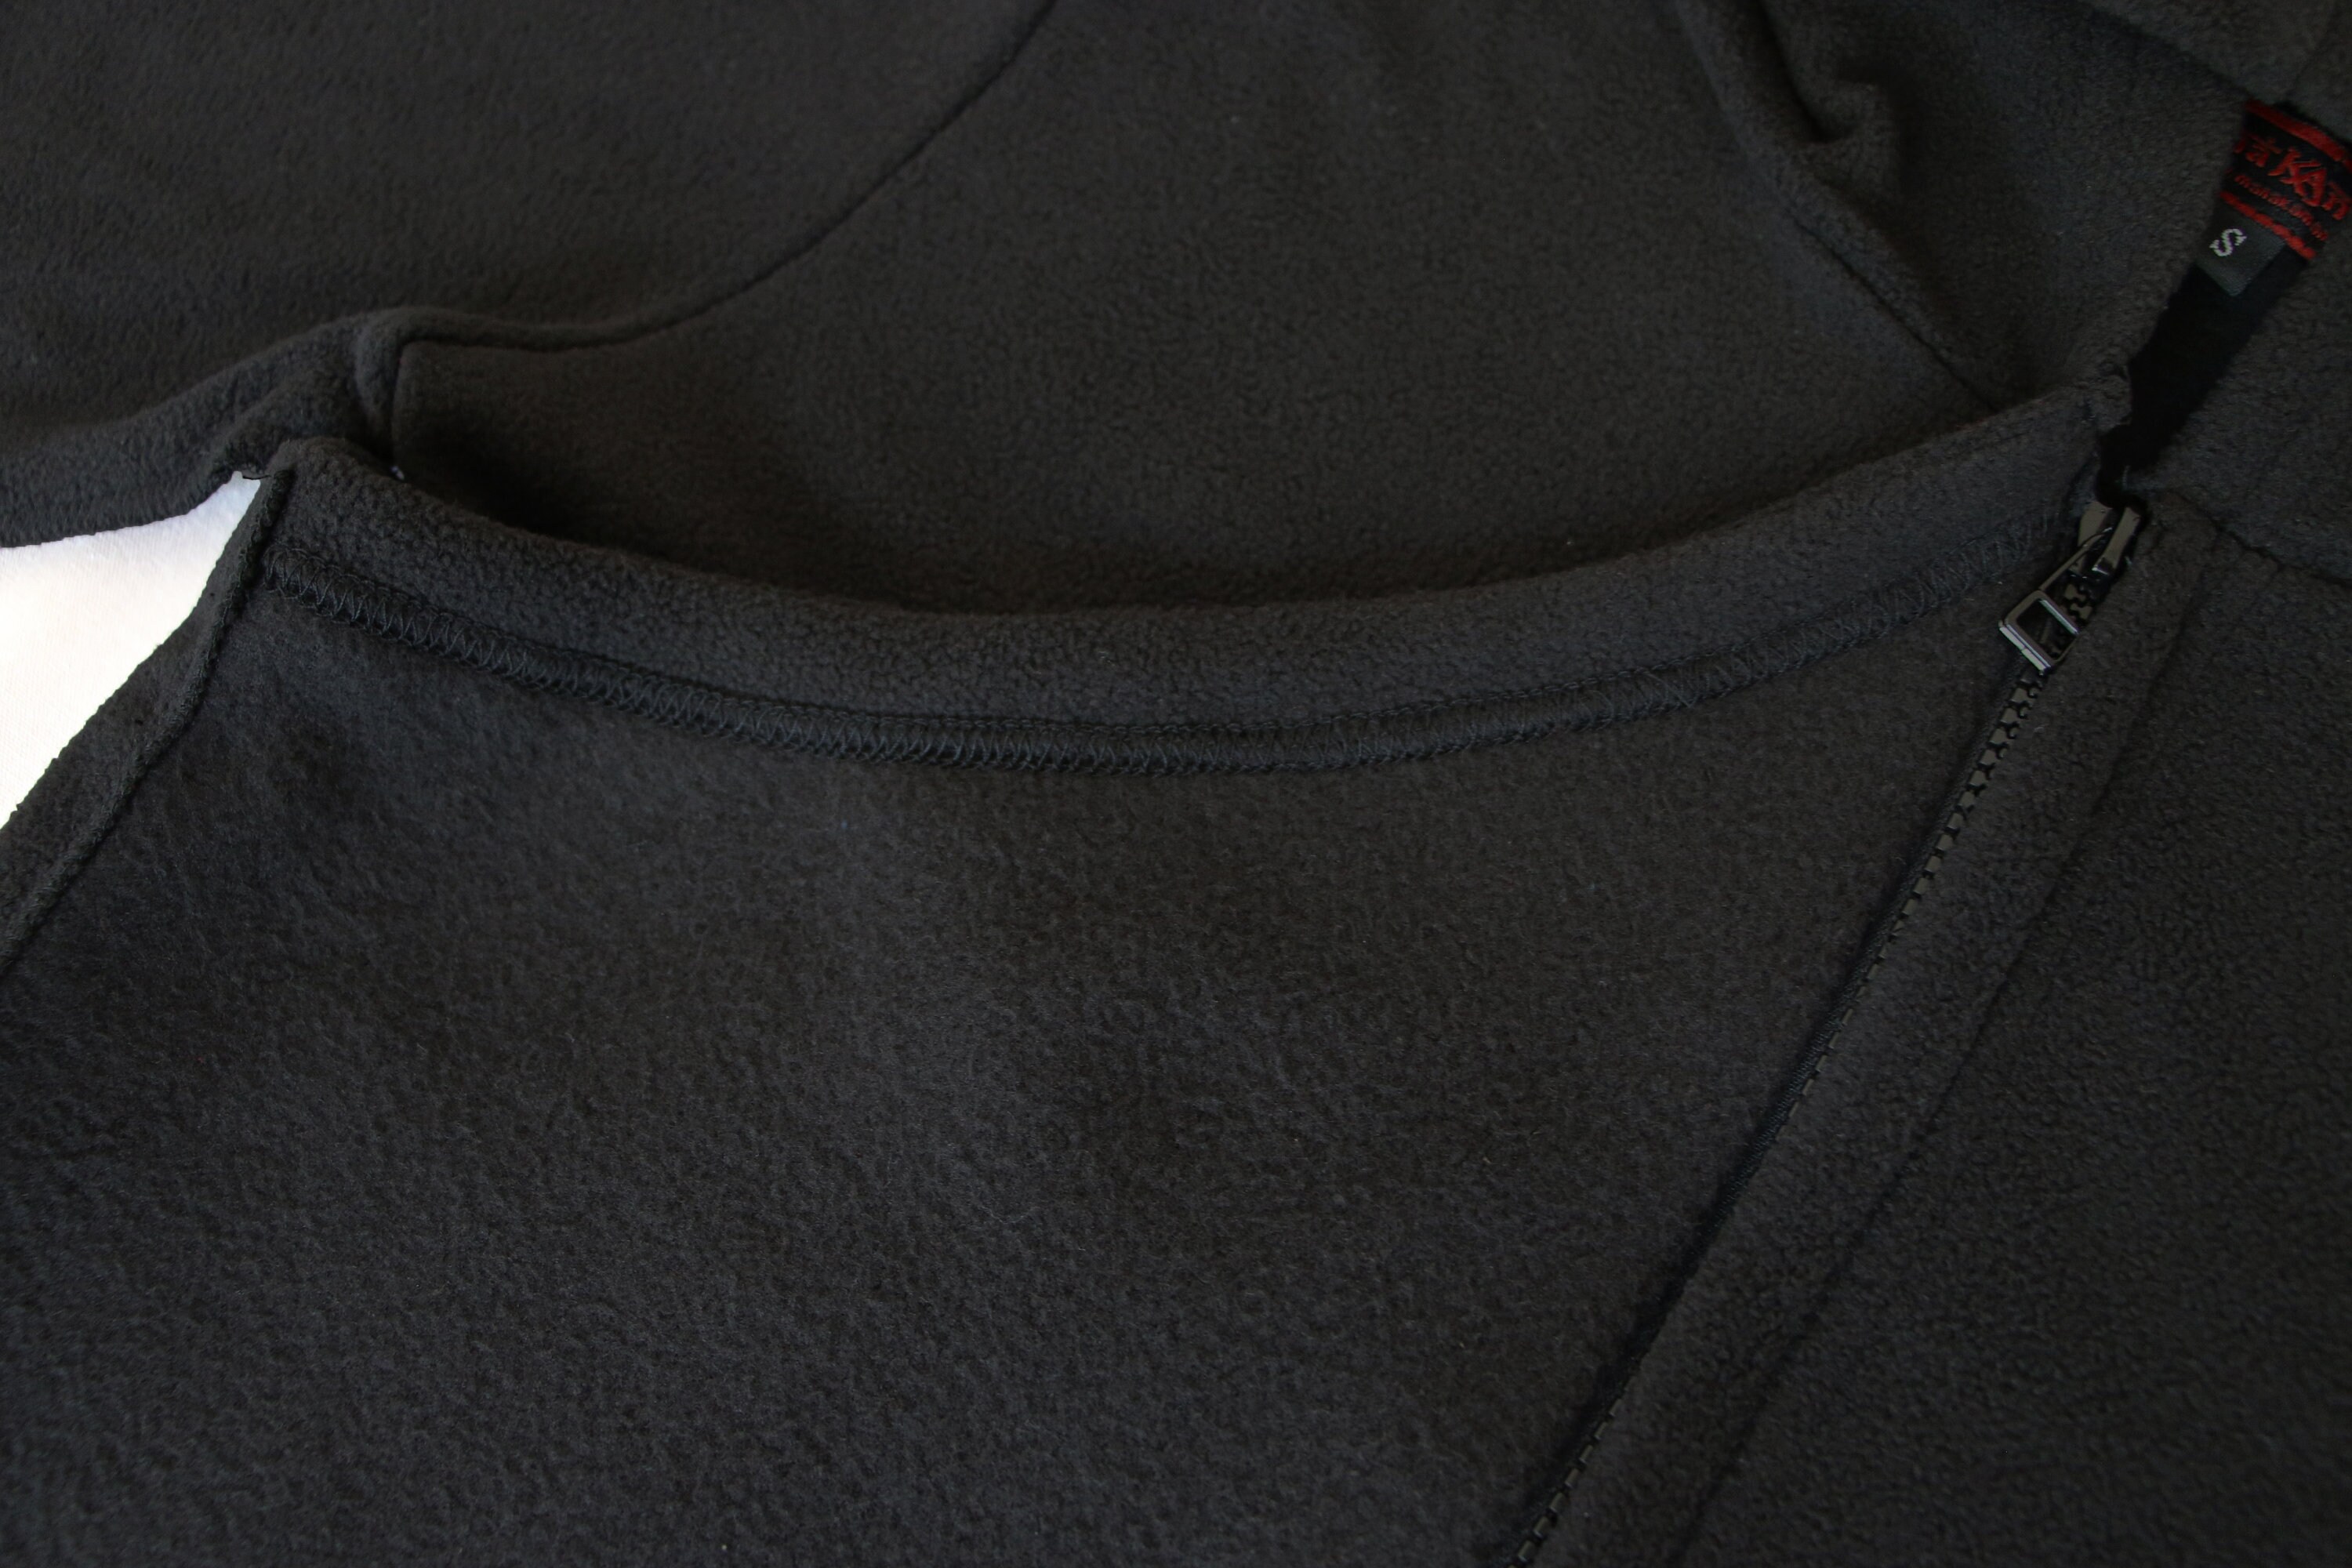 Gothic Fleece Pixie Jacket Black Asymmetric Zipper Jacket | Etsy